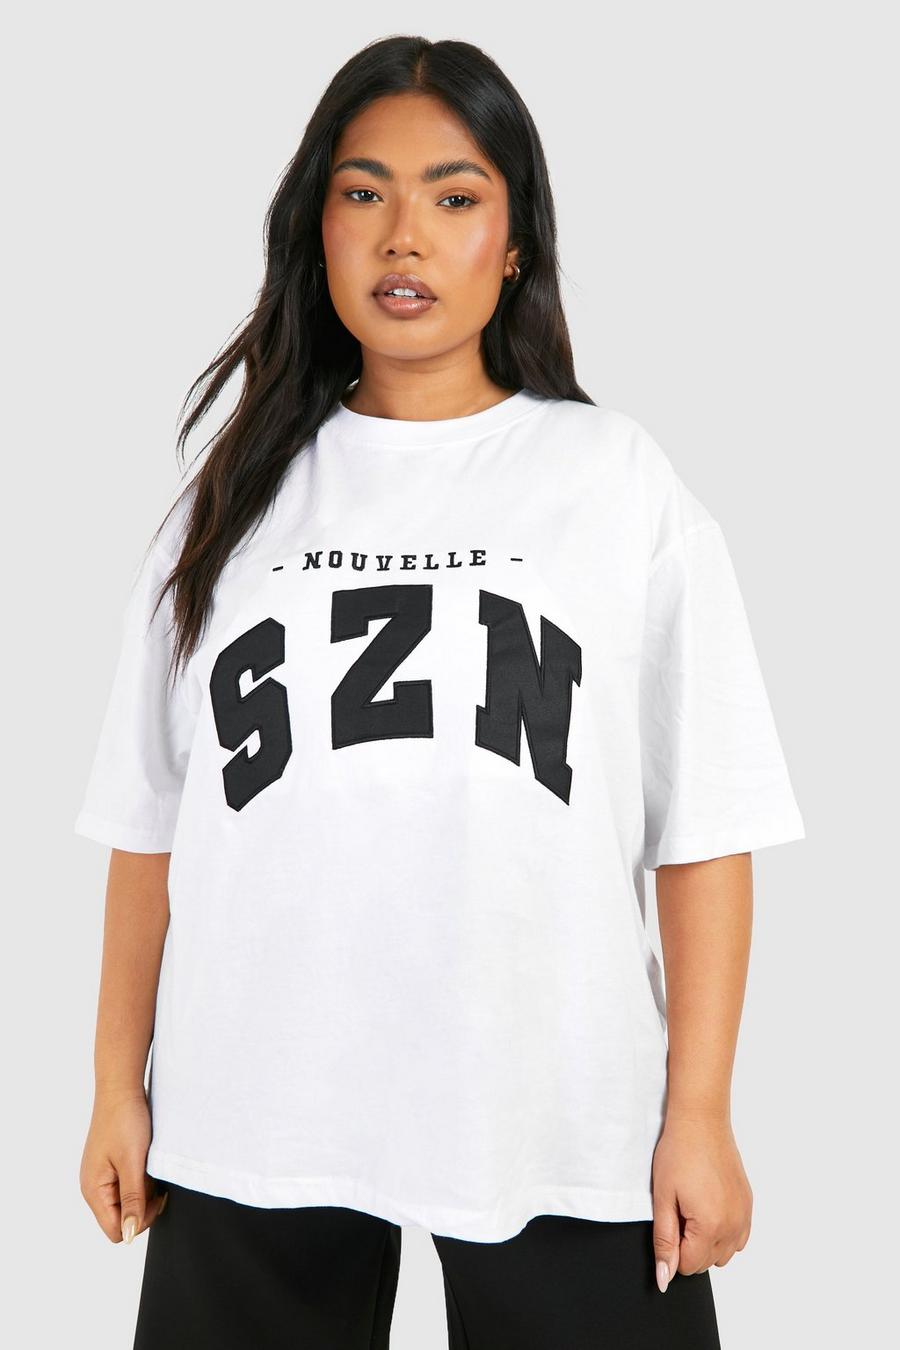 Plus Oversize T-Shirt mit Szn Print, White